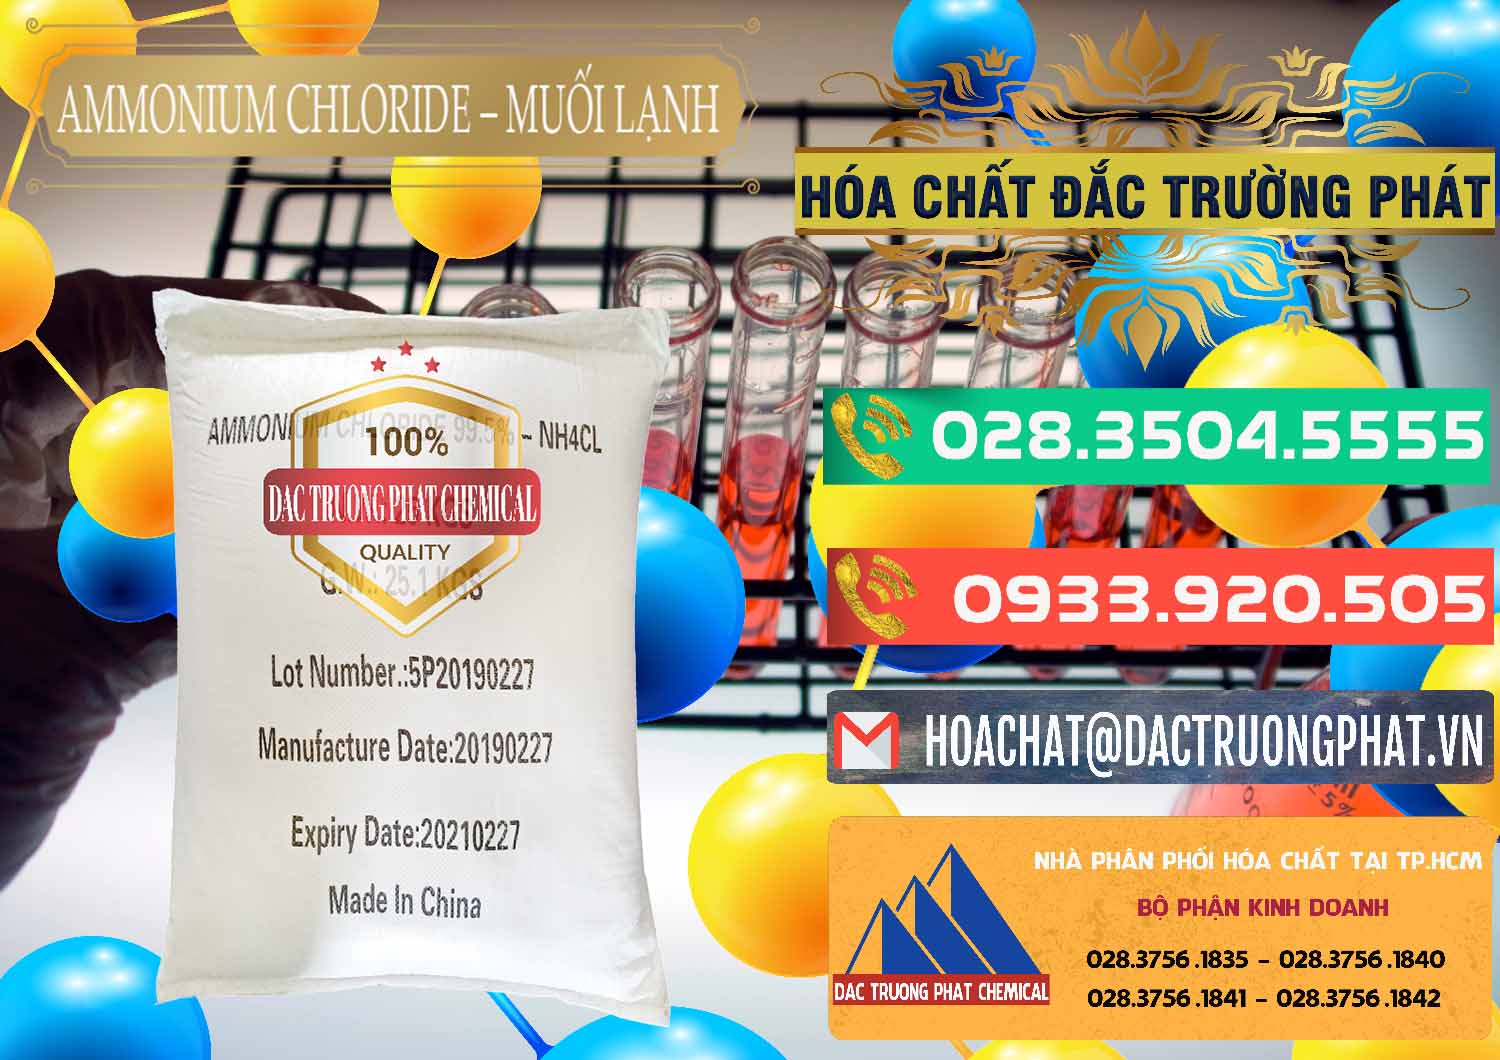 Công ty chuyên cung cấp và bán Ammonium Chloride - Muối Lạnh NH4CL Trung Quốc China - 0021 - Chuyên cung cấp & phân phối hóa chất tại TP.HCM - congtyhoachat.com.vn